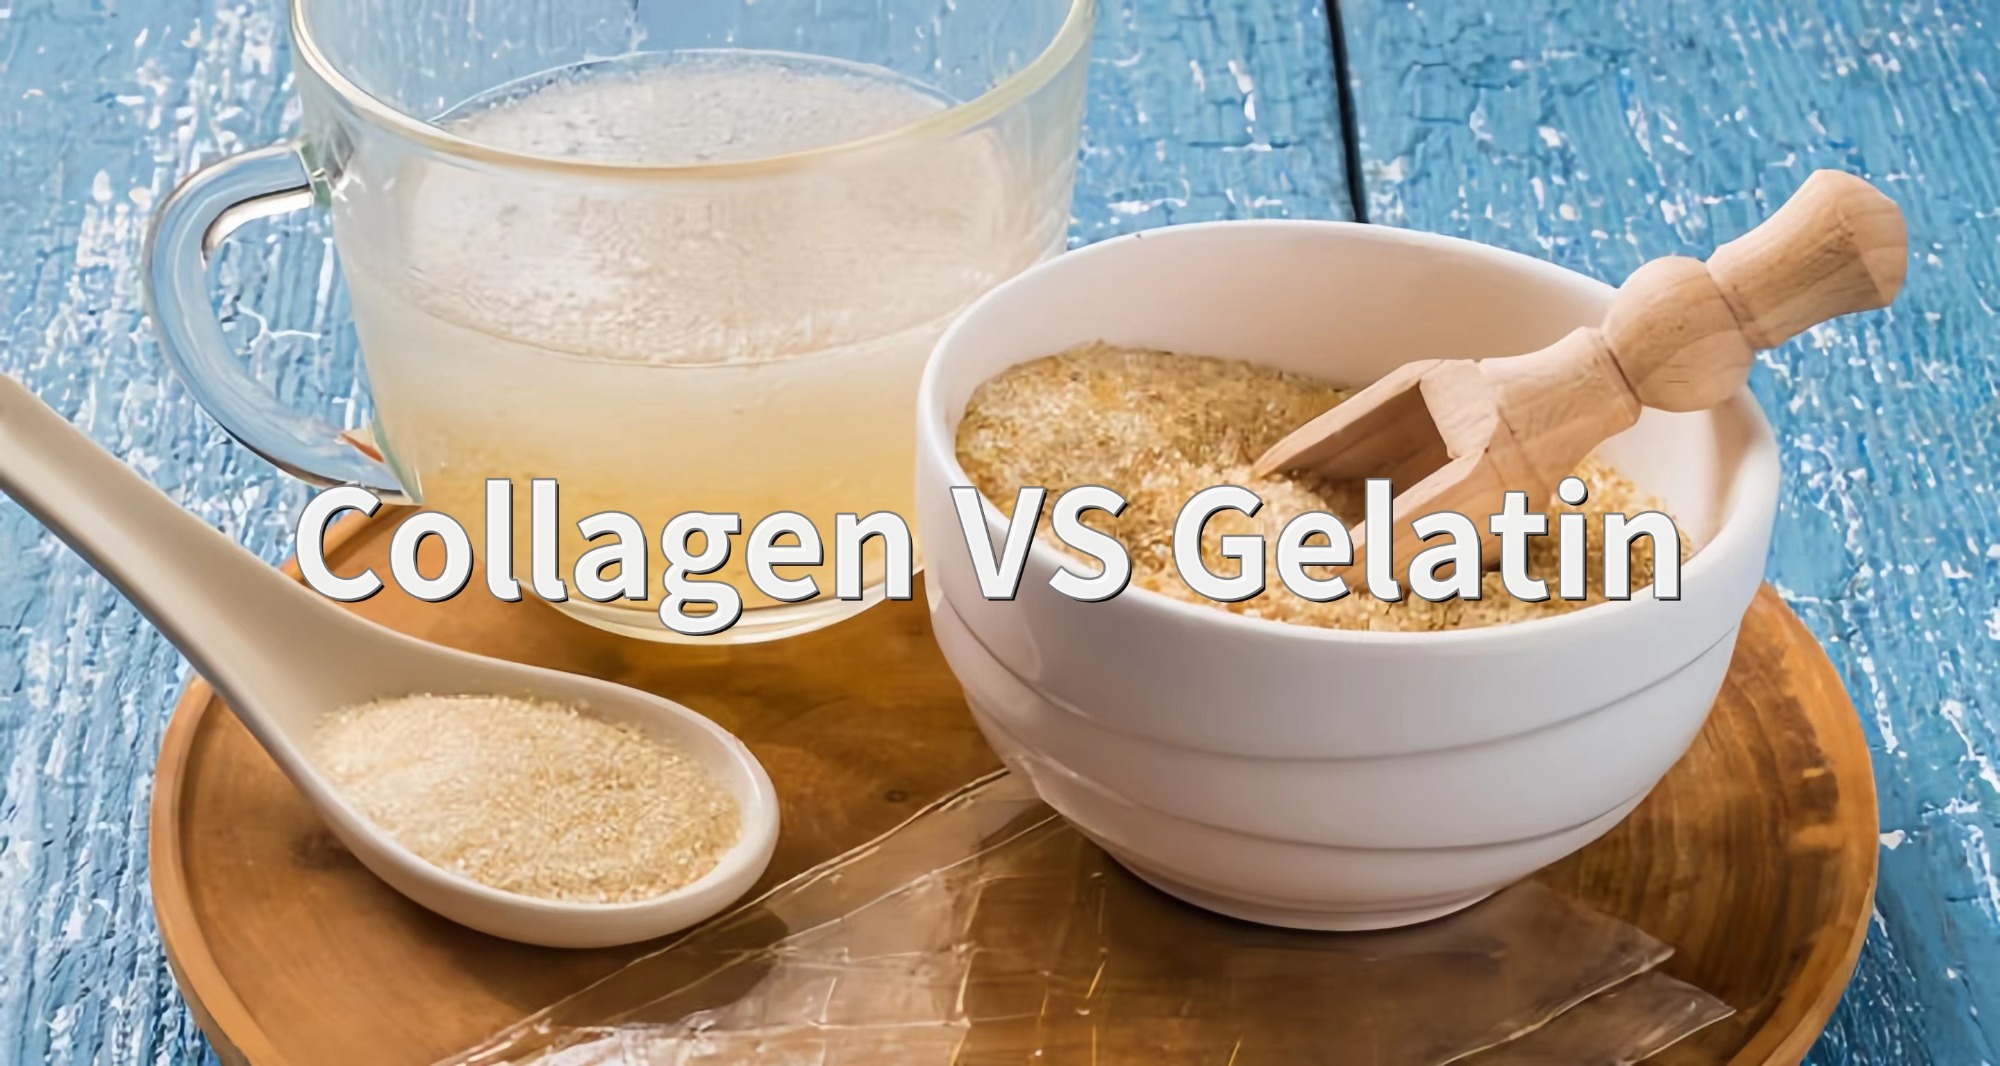 Collagen VS Gelatin